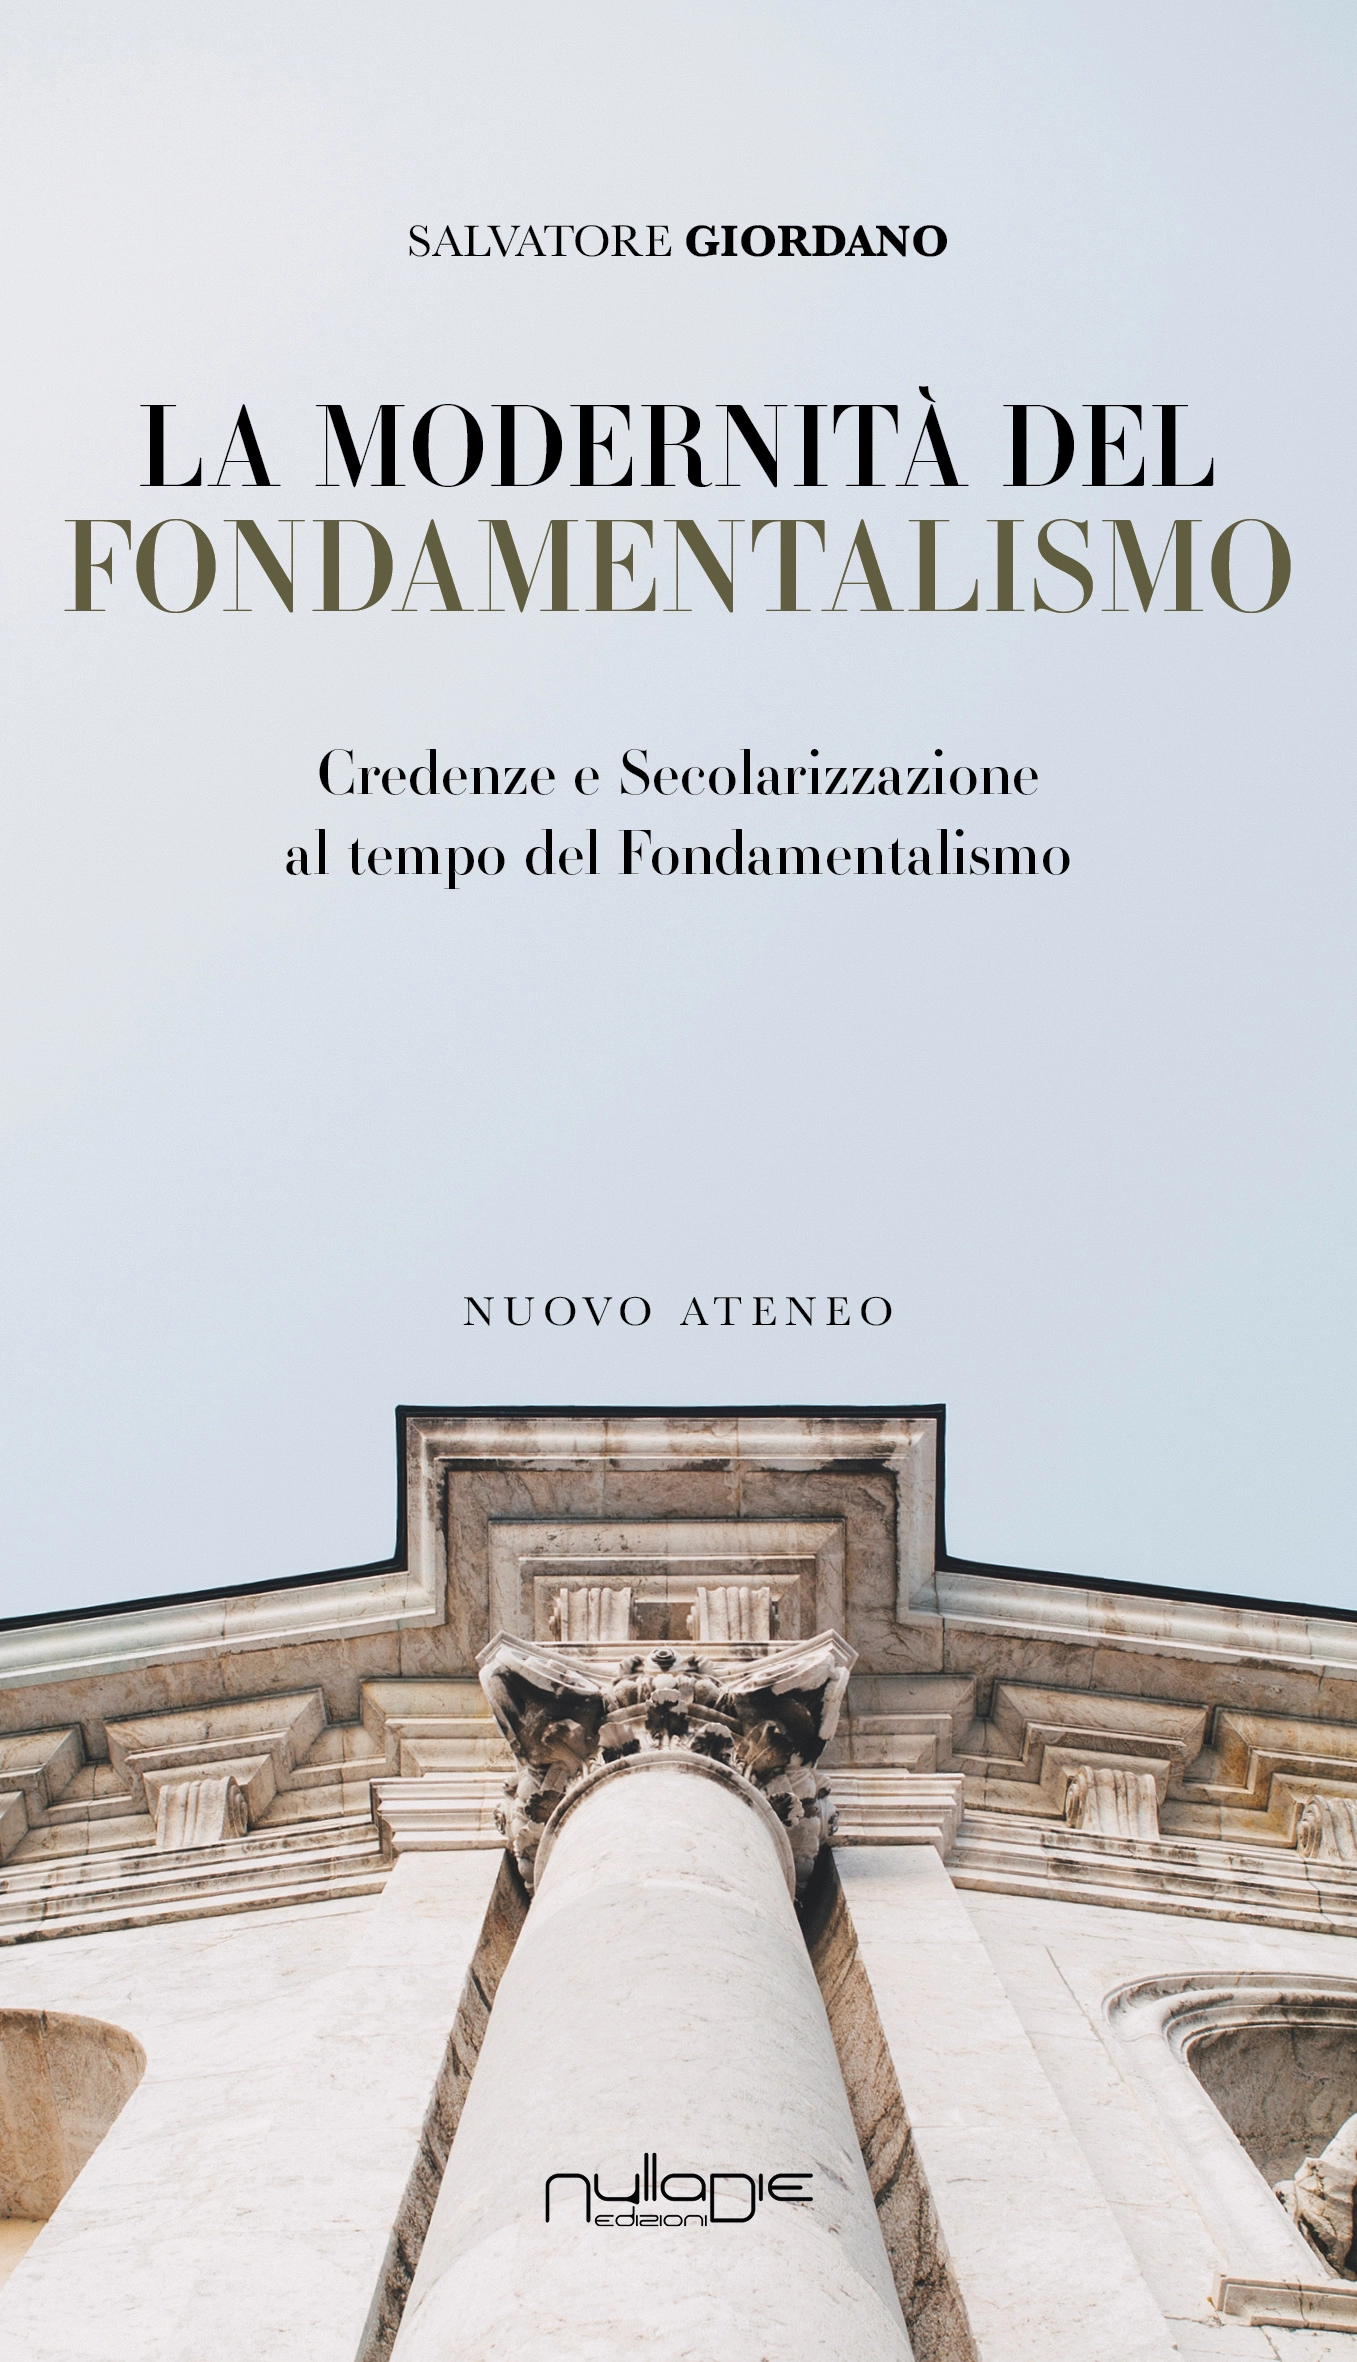 Foto 2 - La modernità del fondamentalismo, di Salvatore Giordano